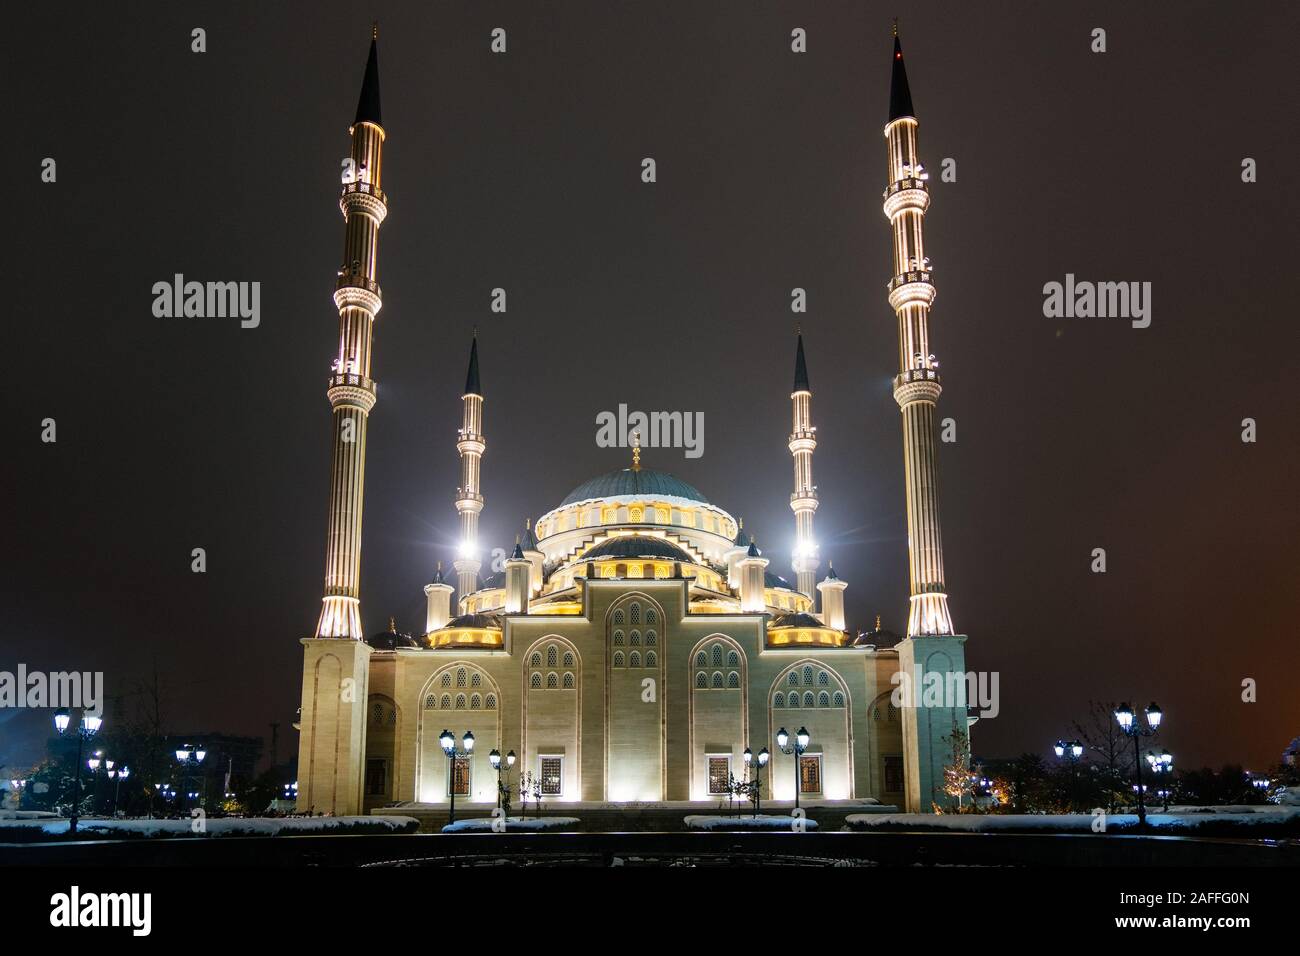 Ahmad Kadyrov Mosque Heart of Chechnya at night Grozny, Chechnya, Russia. Stock Photo